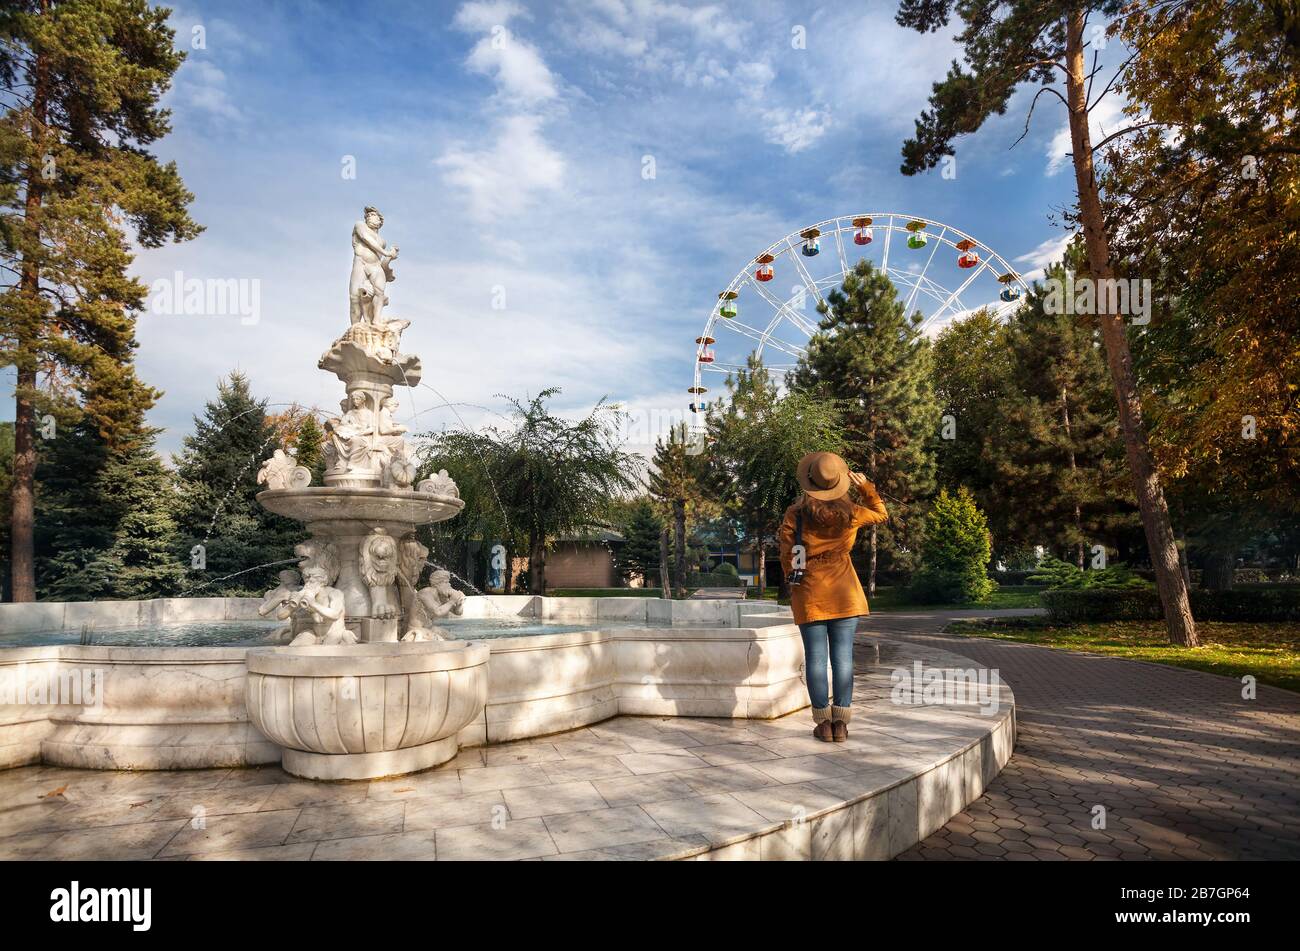 Woman with hat près de la fontaine avec des statues à la grande roue au parc en automne Banque D'Images